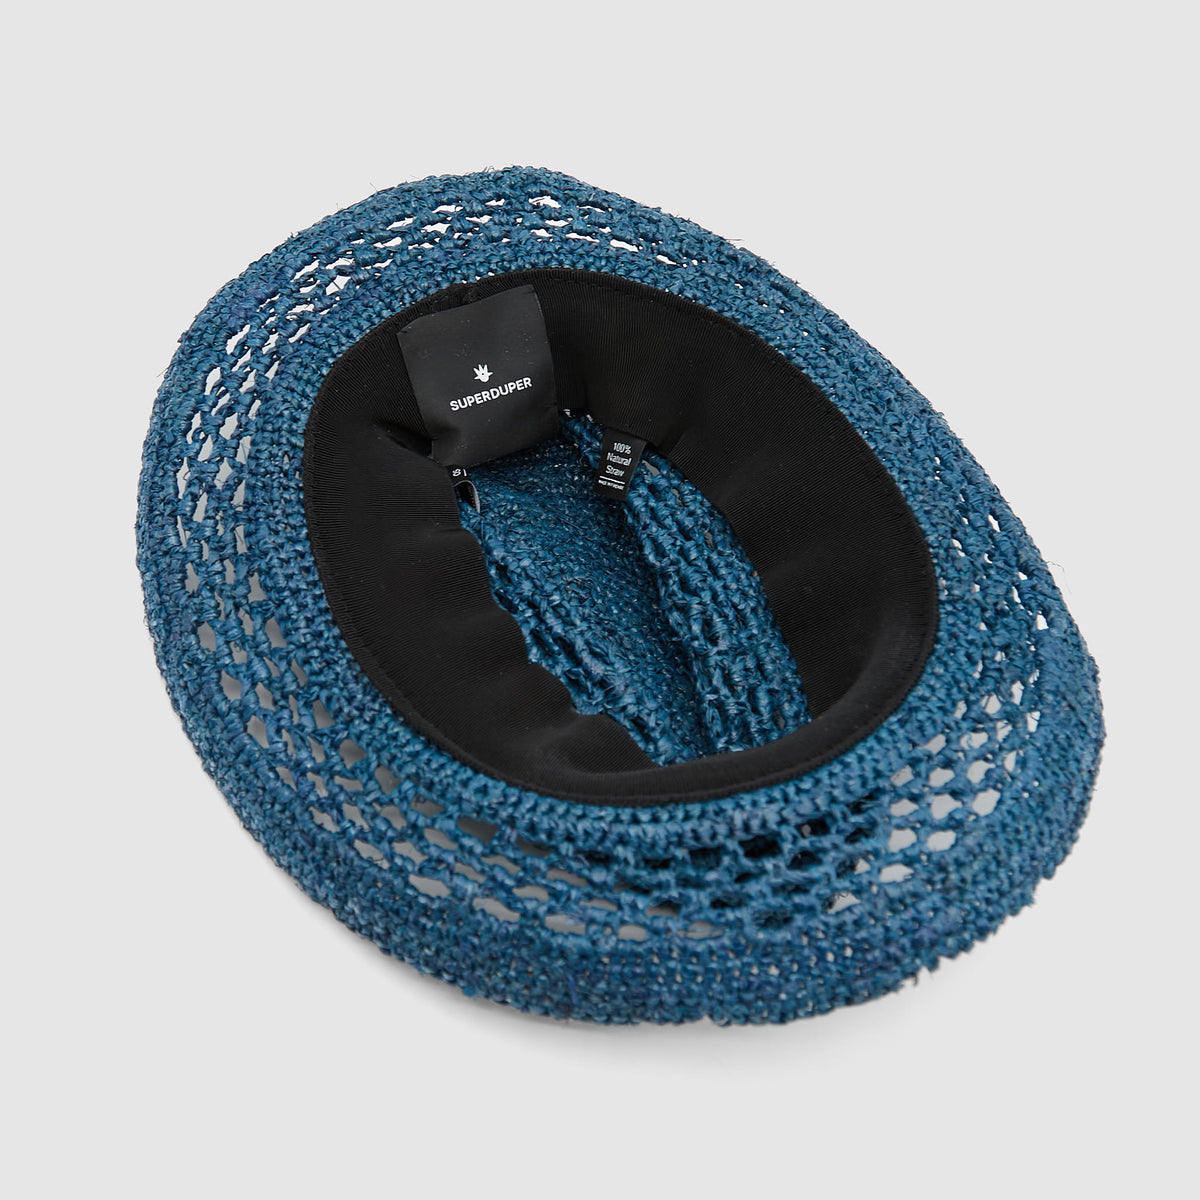 Superduper Hobo Crushable Crochet Hat